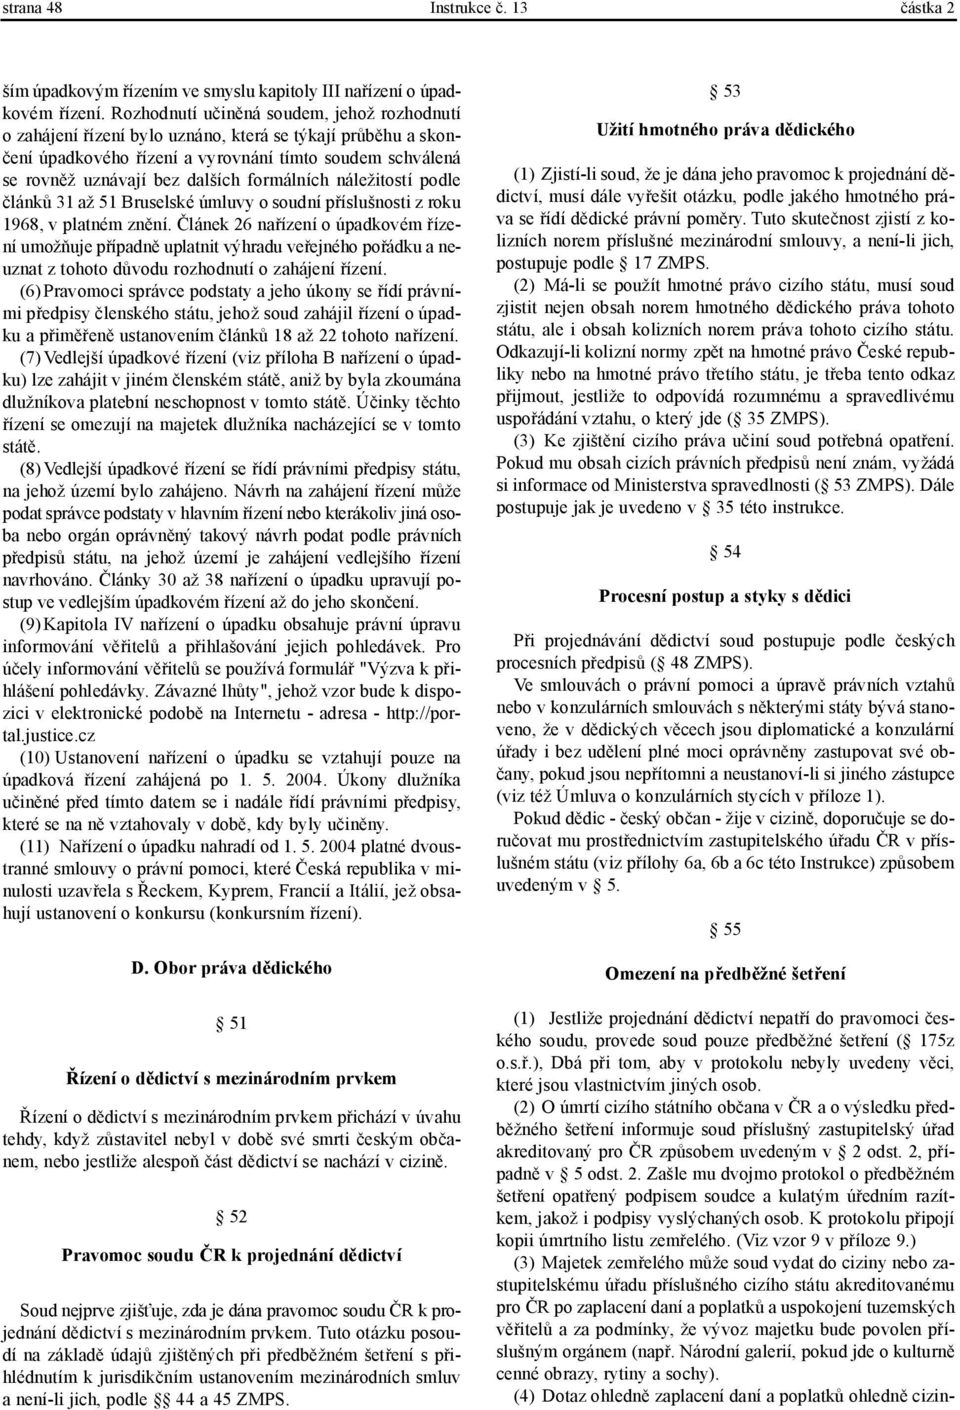 formálních náležitostí podle článků 31 až 51 Bruselské úmluvy o soudní příslušnosti z roku 1968, v platném znění.